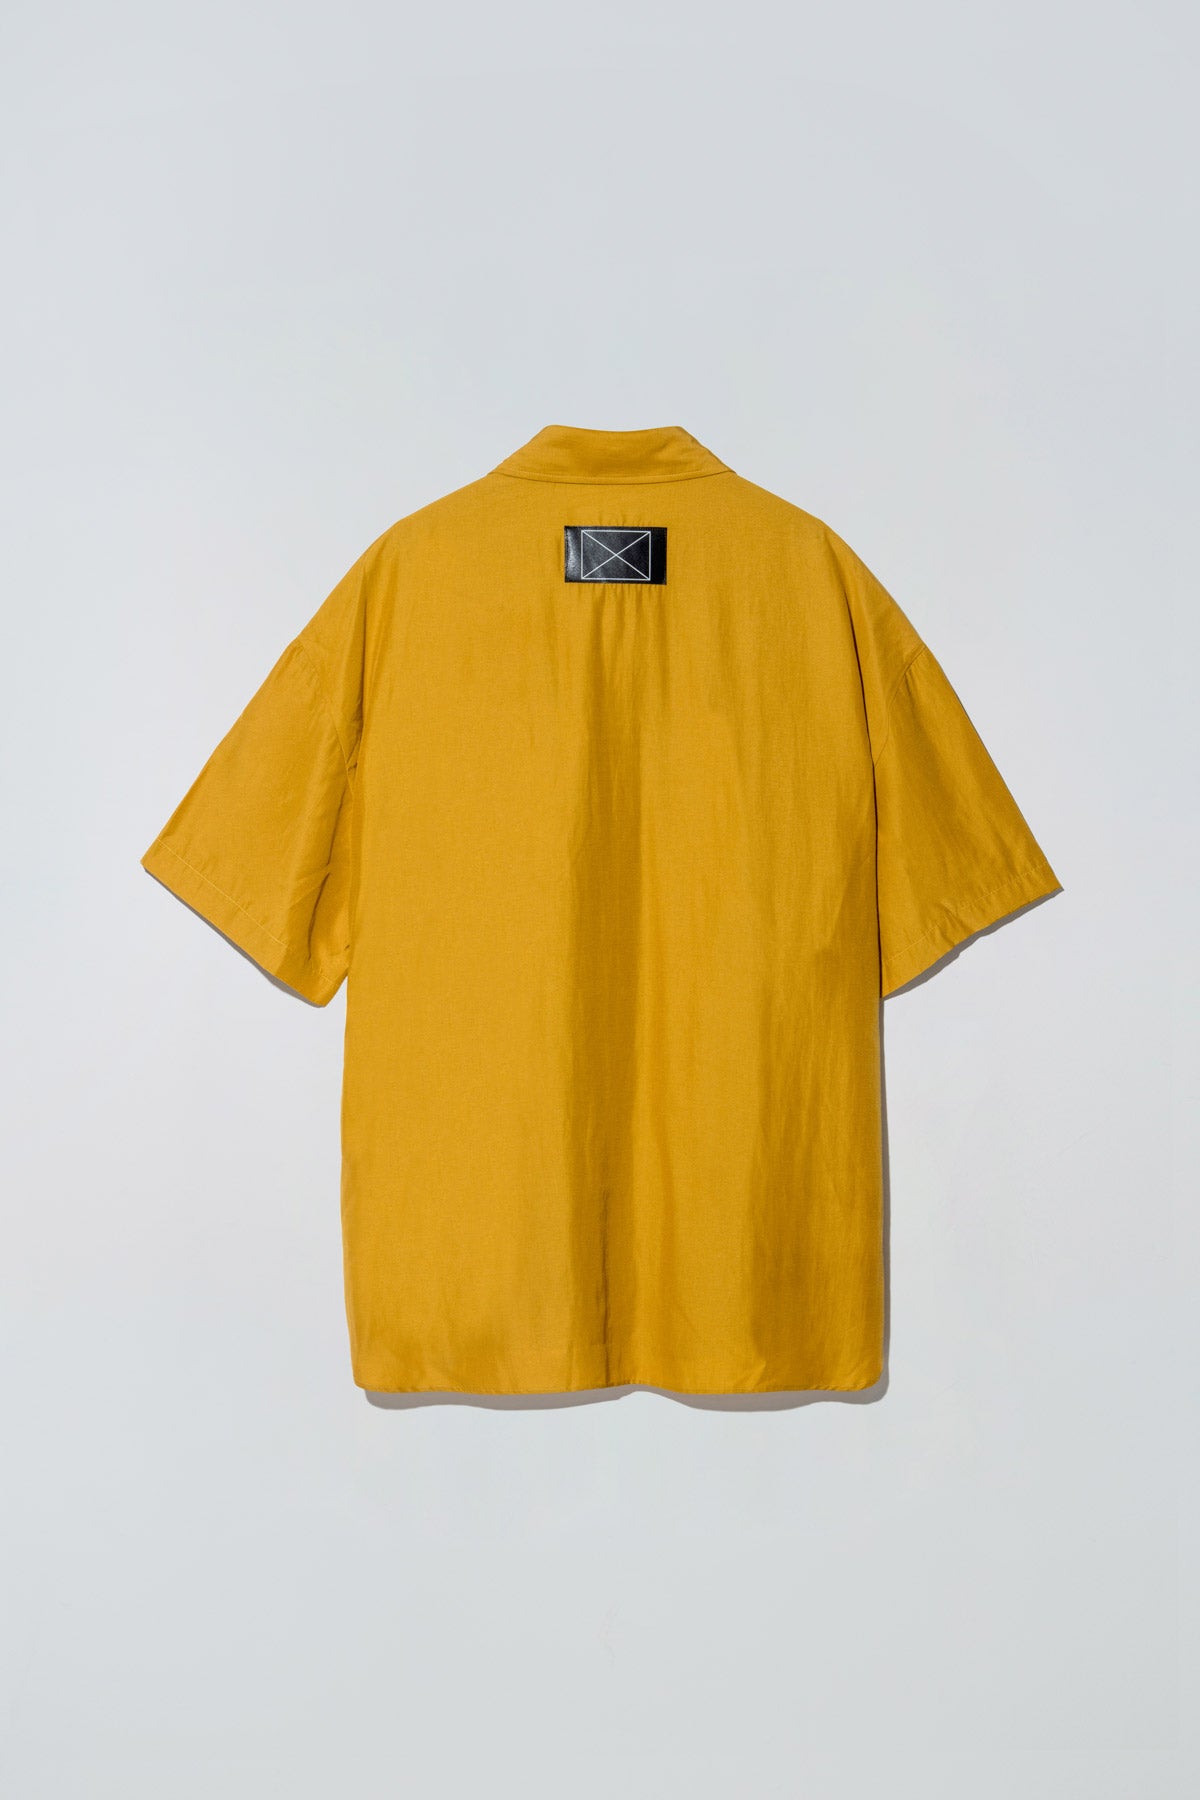 Billie Shirt Mustard Yellow